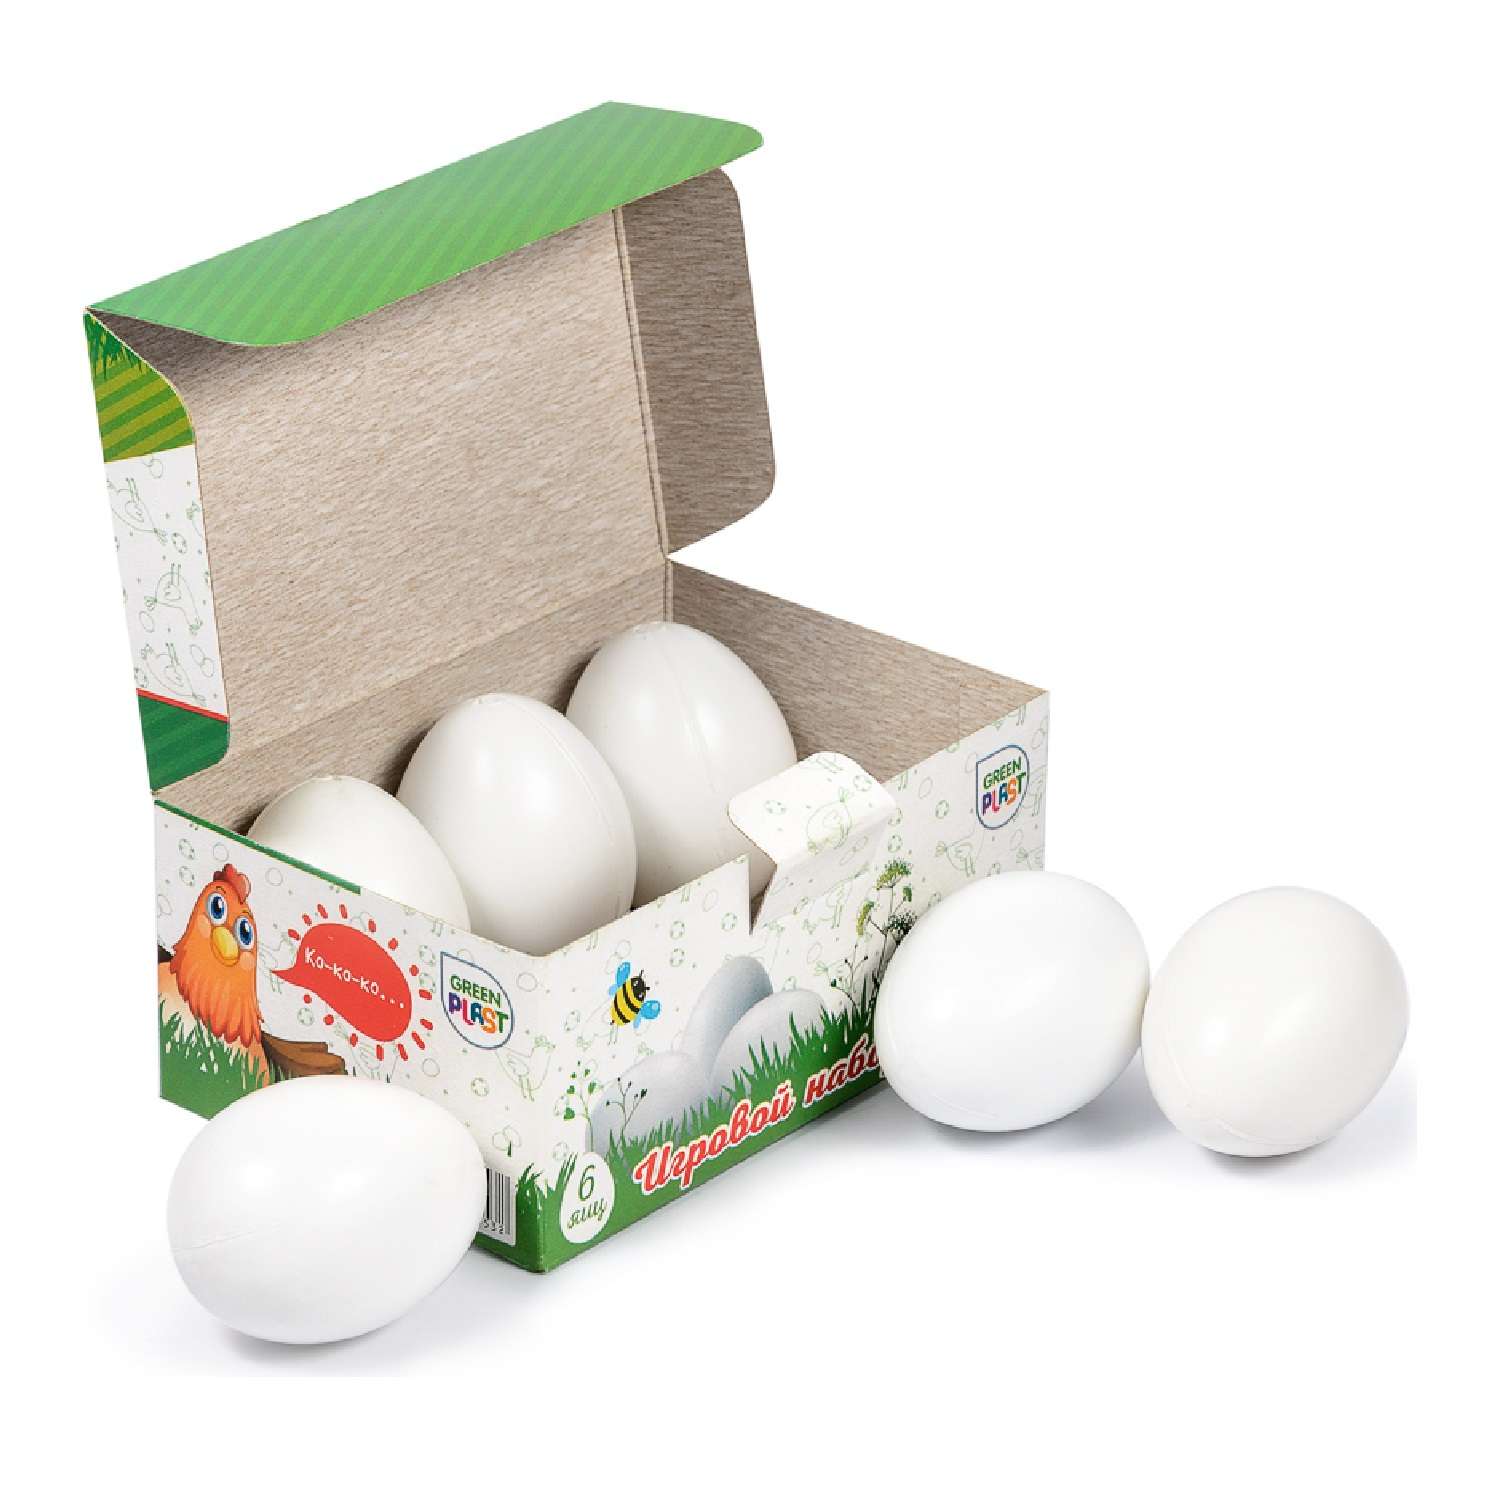 Игровой набор Green Plast продукты - яйца - фото 2